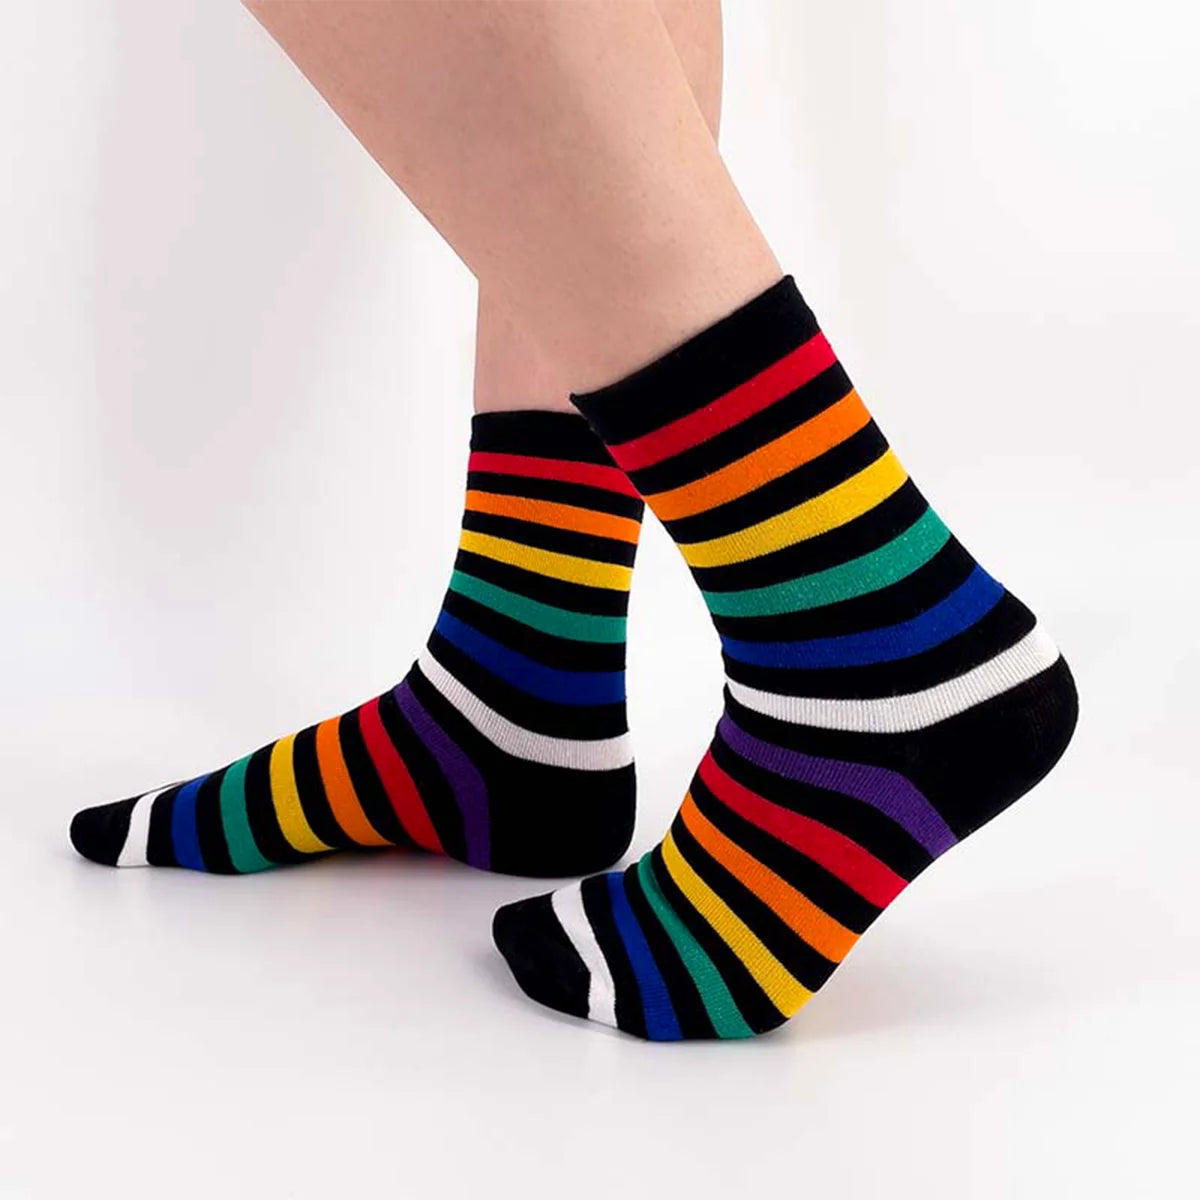 Chaussettes noires adultes en coton représentant des lignes multicolores | Chaussettes douces et respirantes | Un excellent choix pour les adultes qui aiment les chaussettes colorées